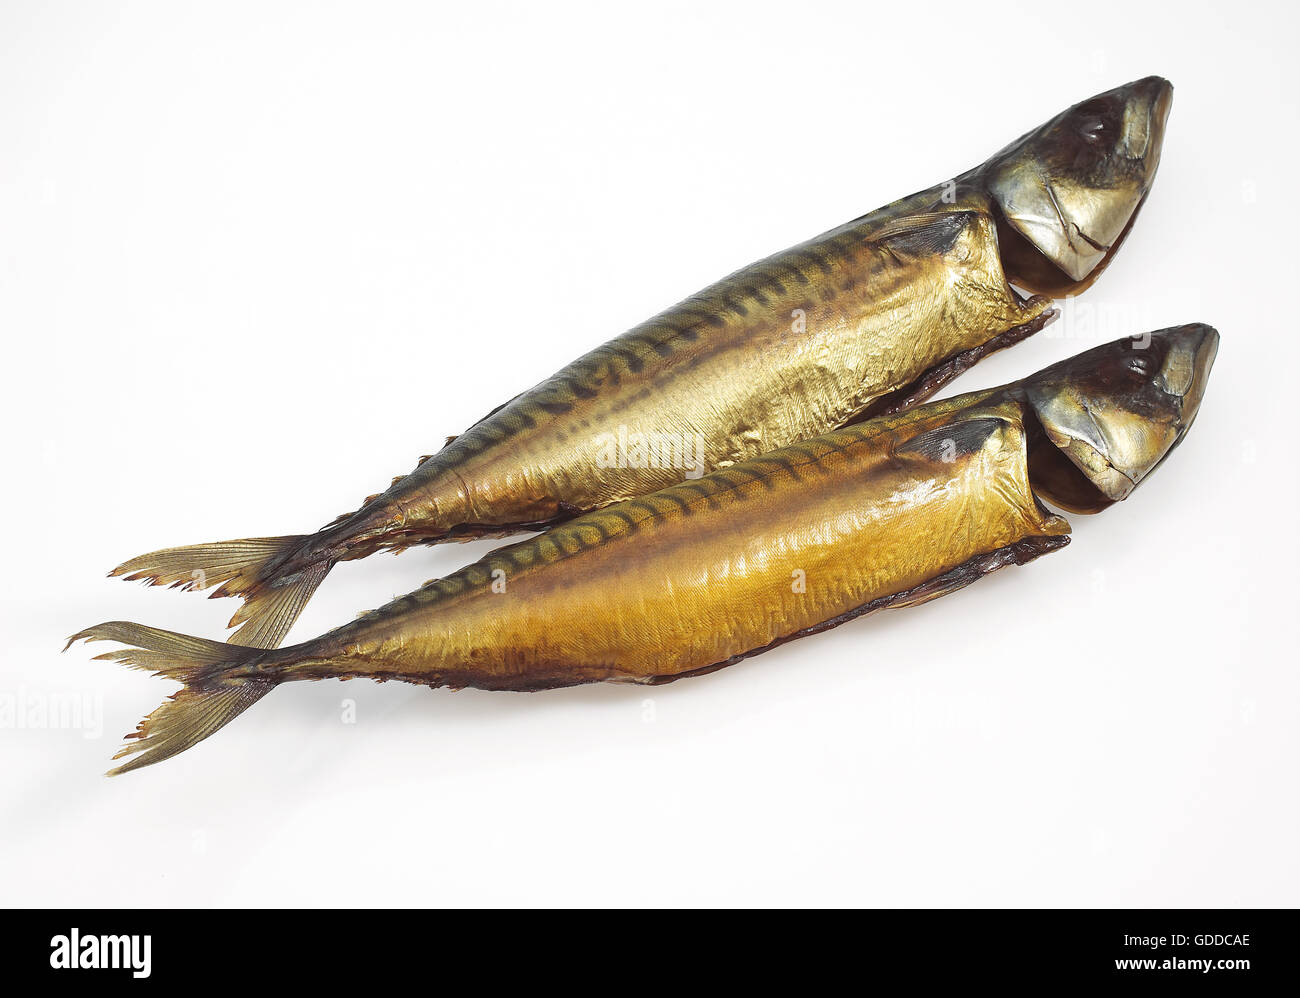 Geräucherte Makrele, Scomber Scombrus, fischt vor weißem Hintergrund Stockfoto